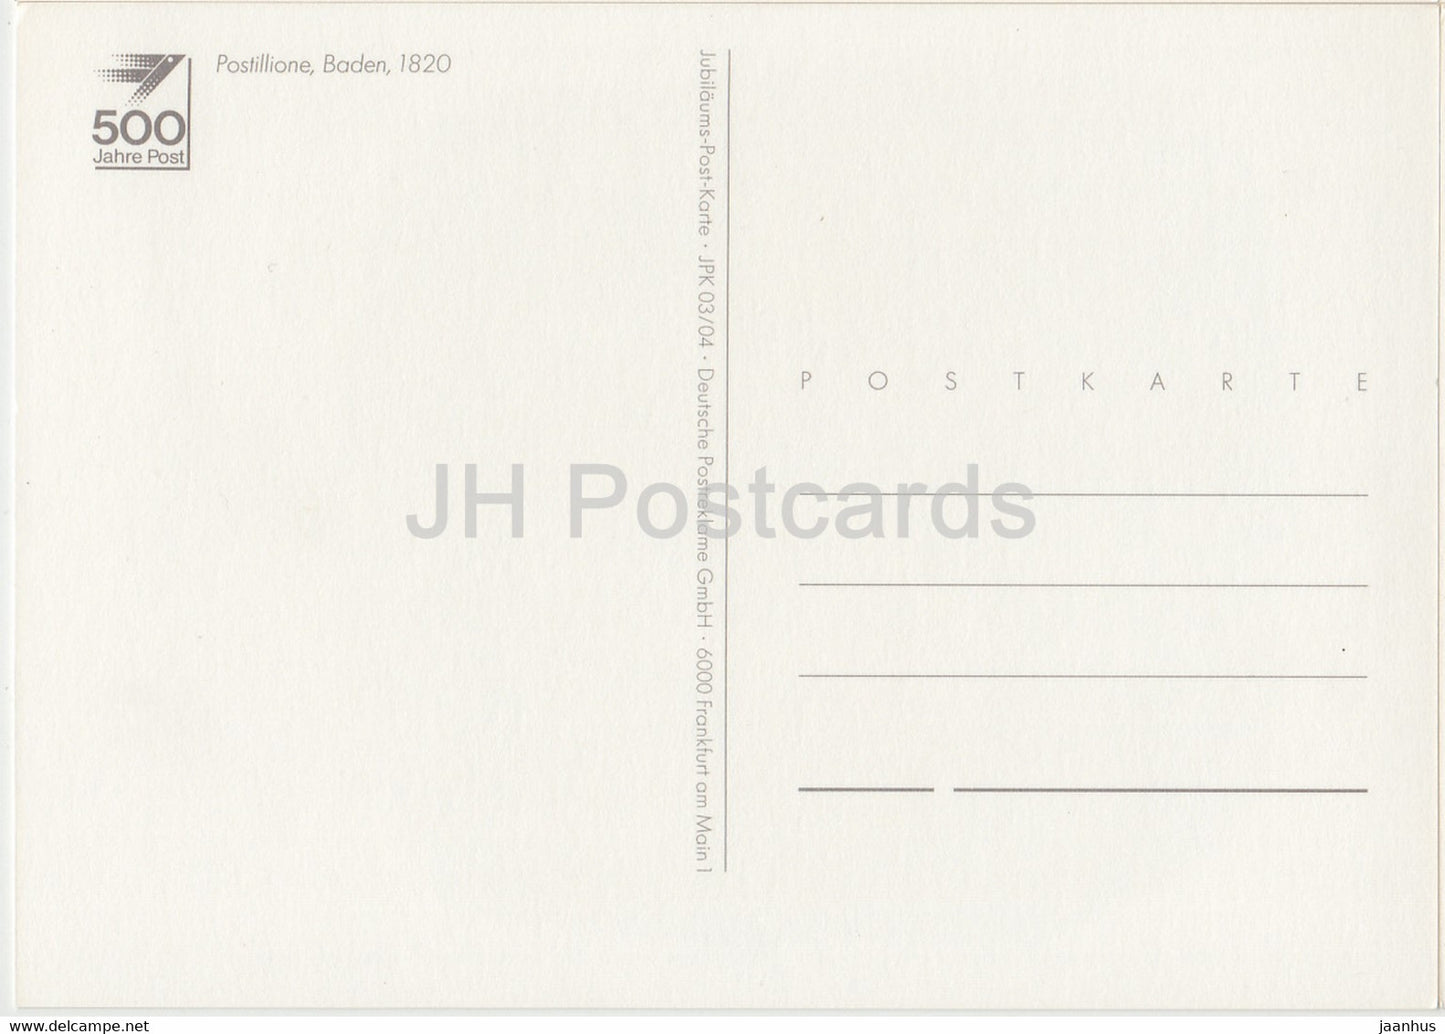 Postillione - Baden - Postboten - Postdienst - Deutschland - unbenutzt